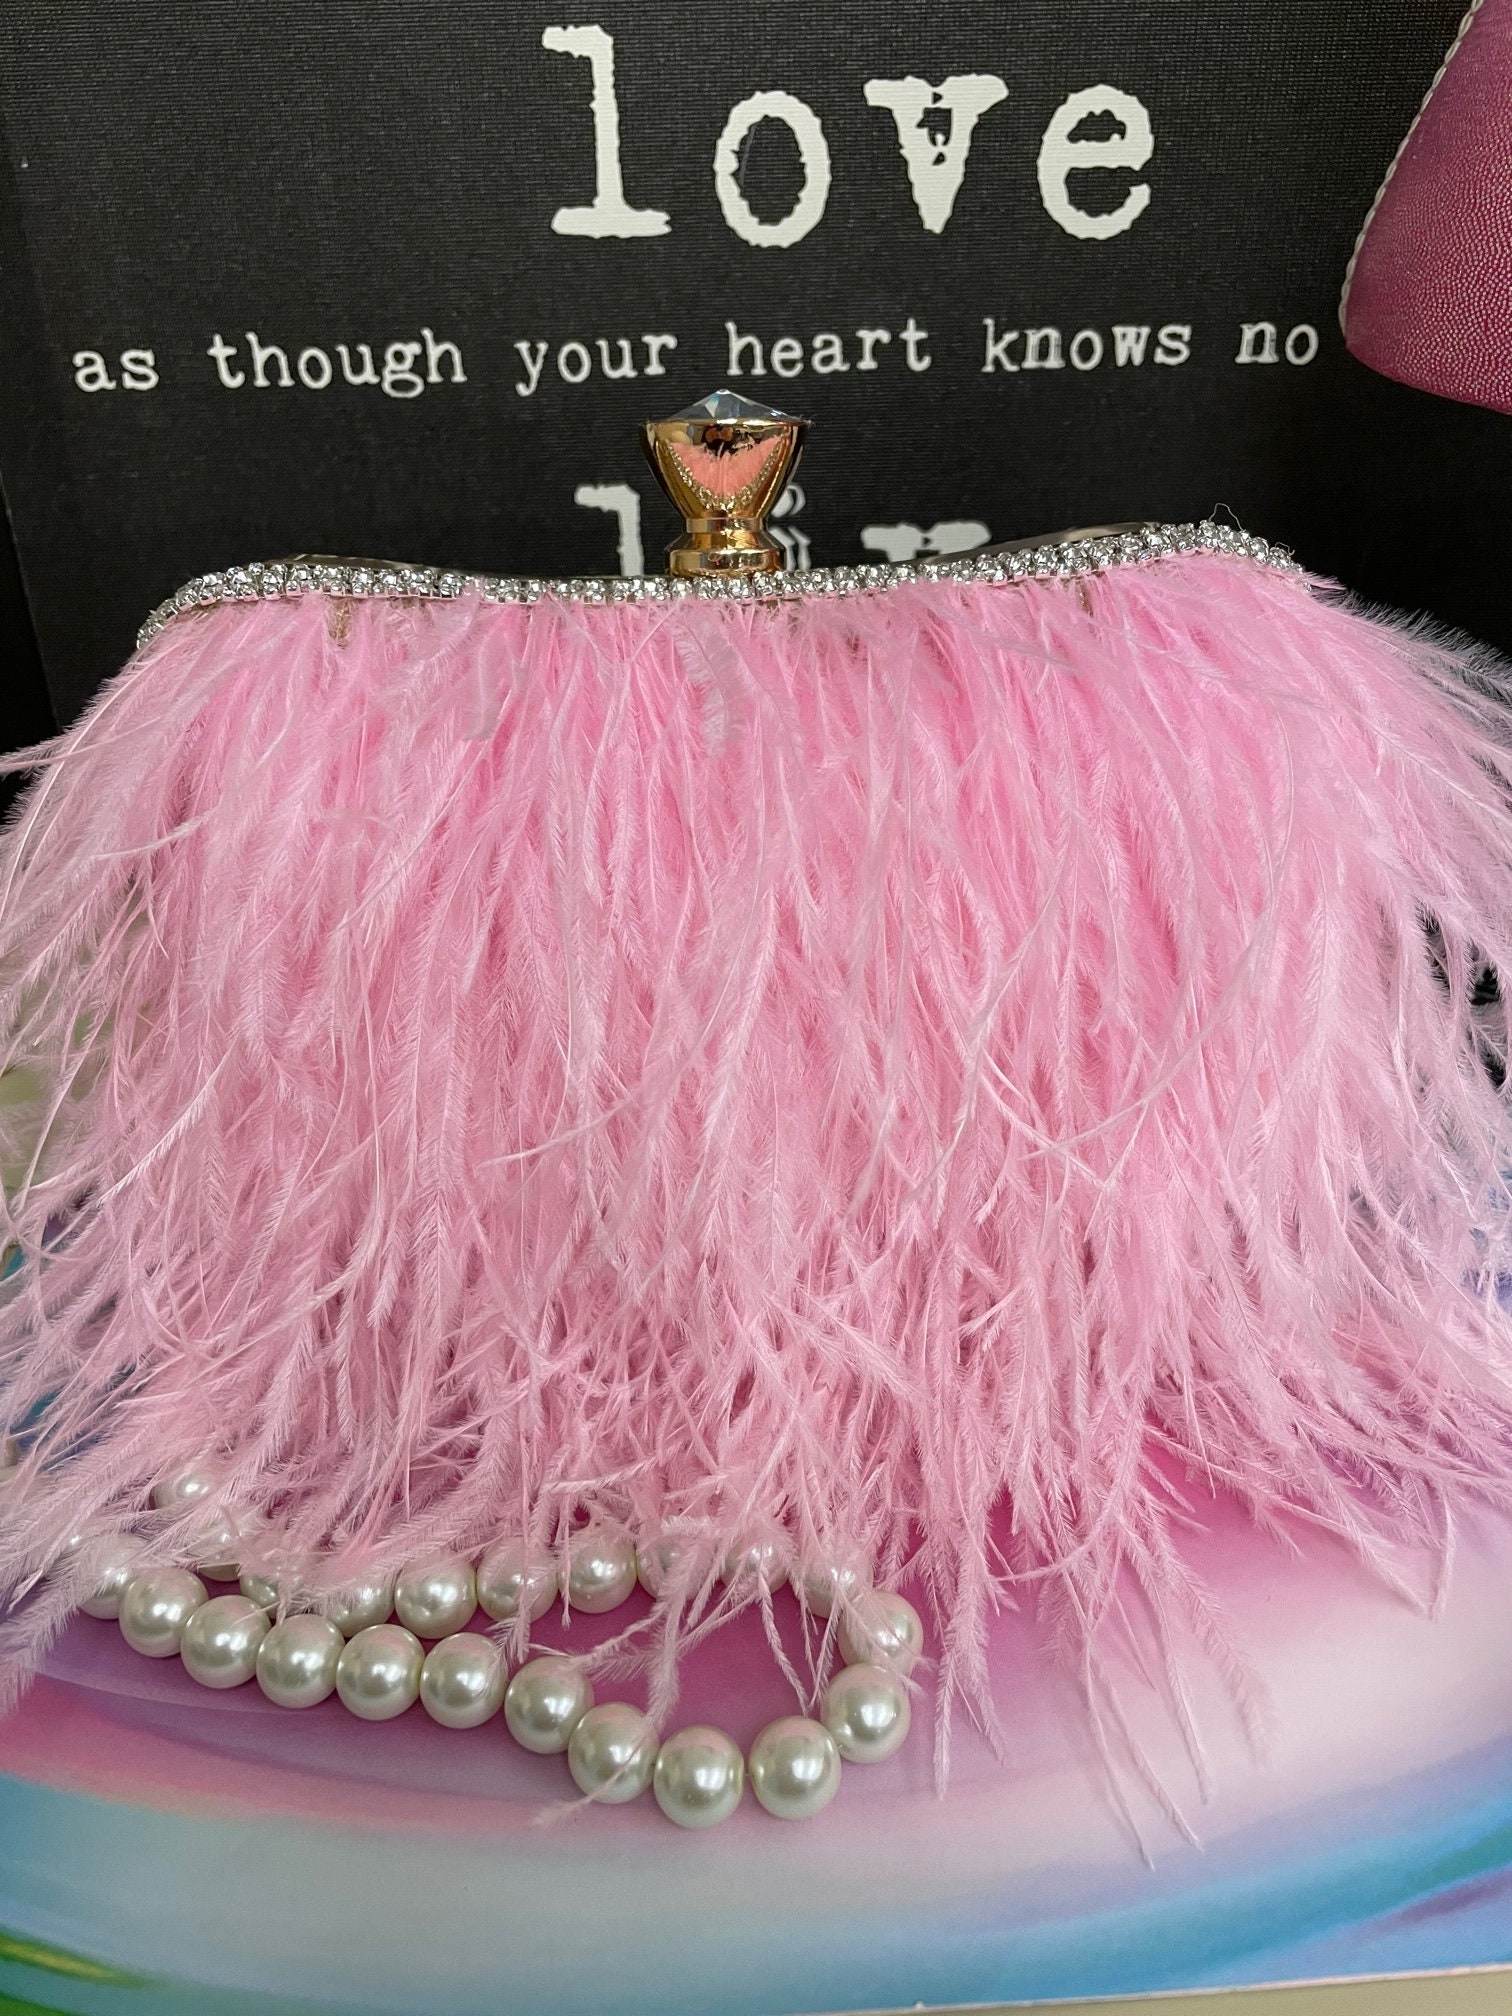 bag pink ostrich